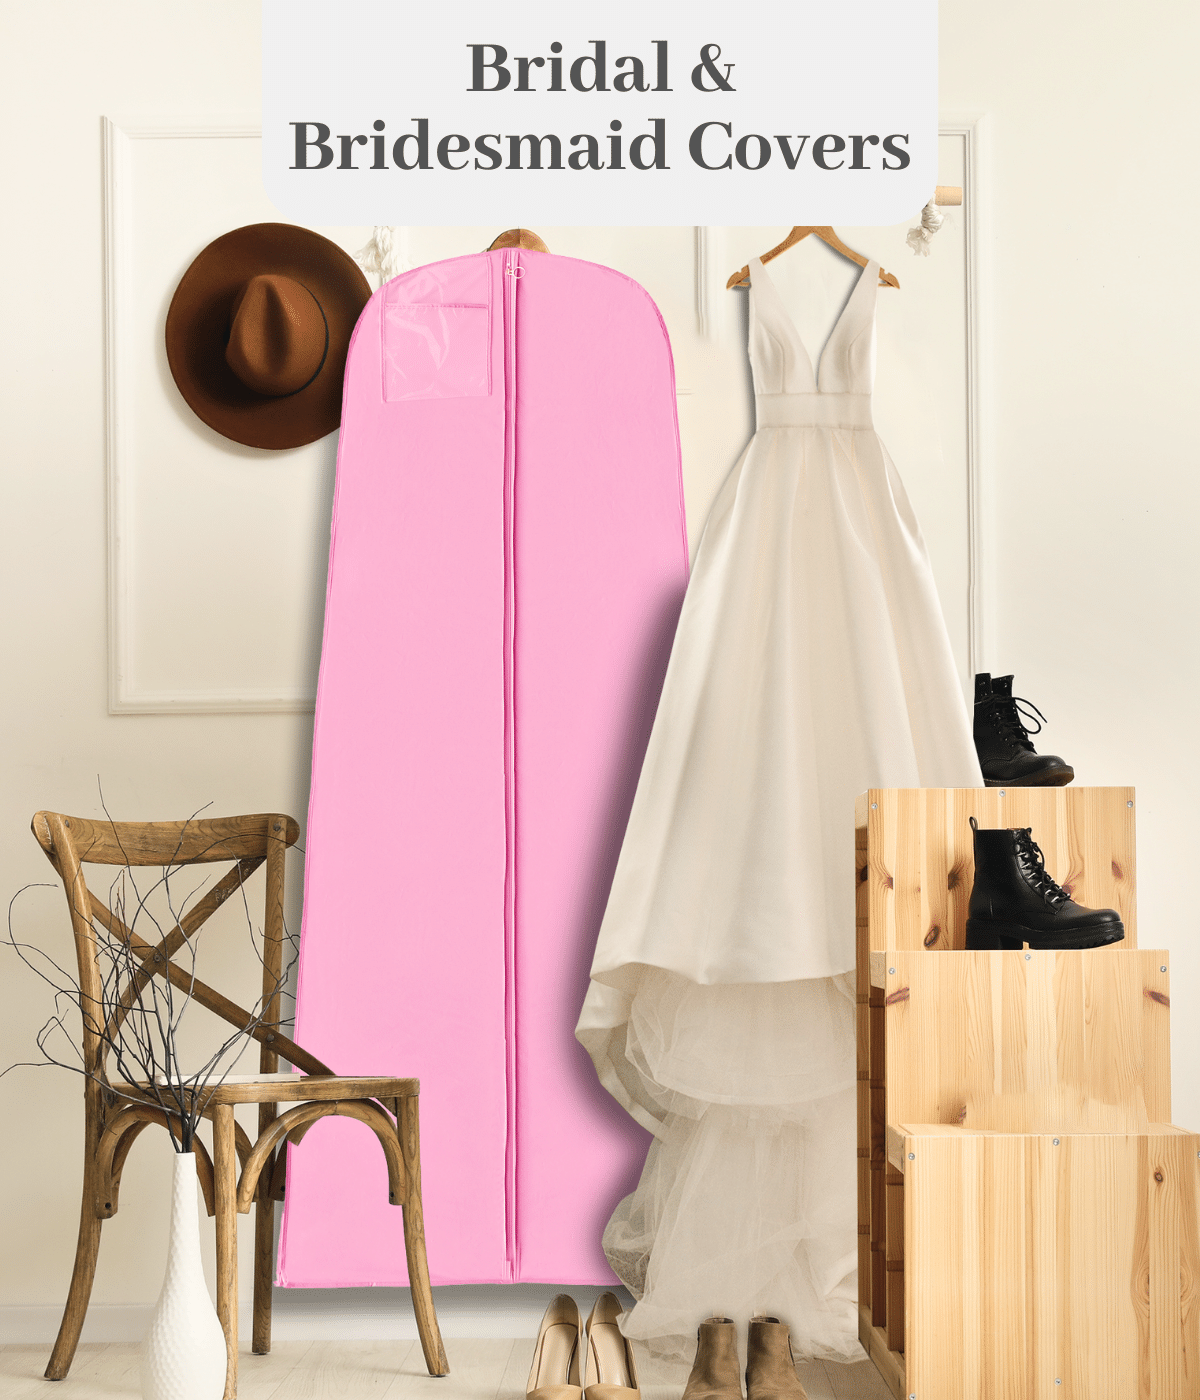 Bridal & Bridesmaid covers